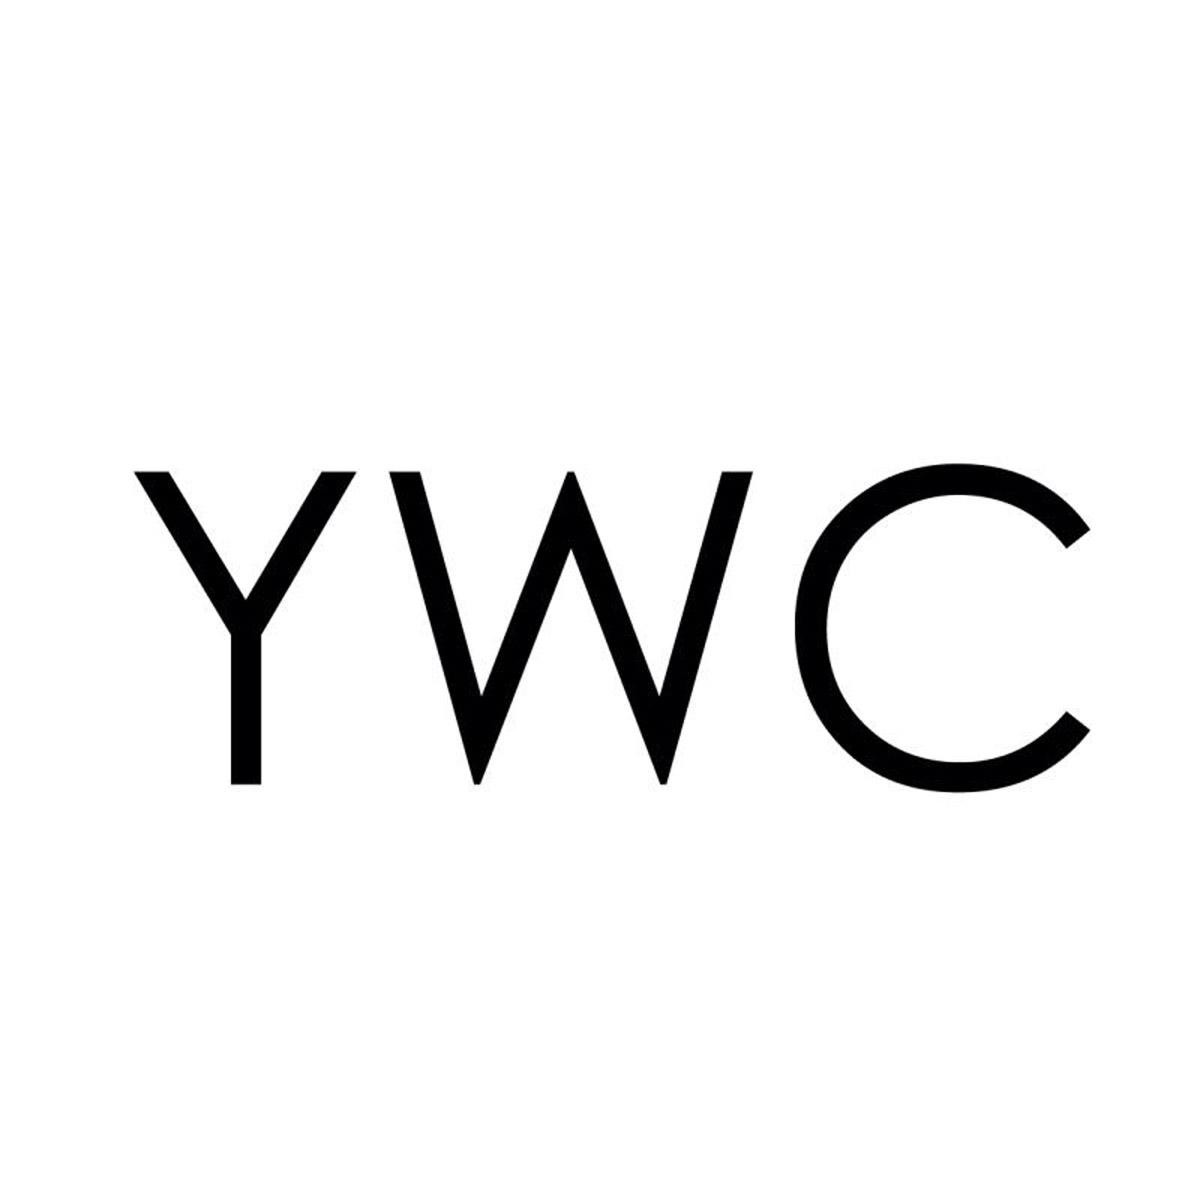 YWC